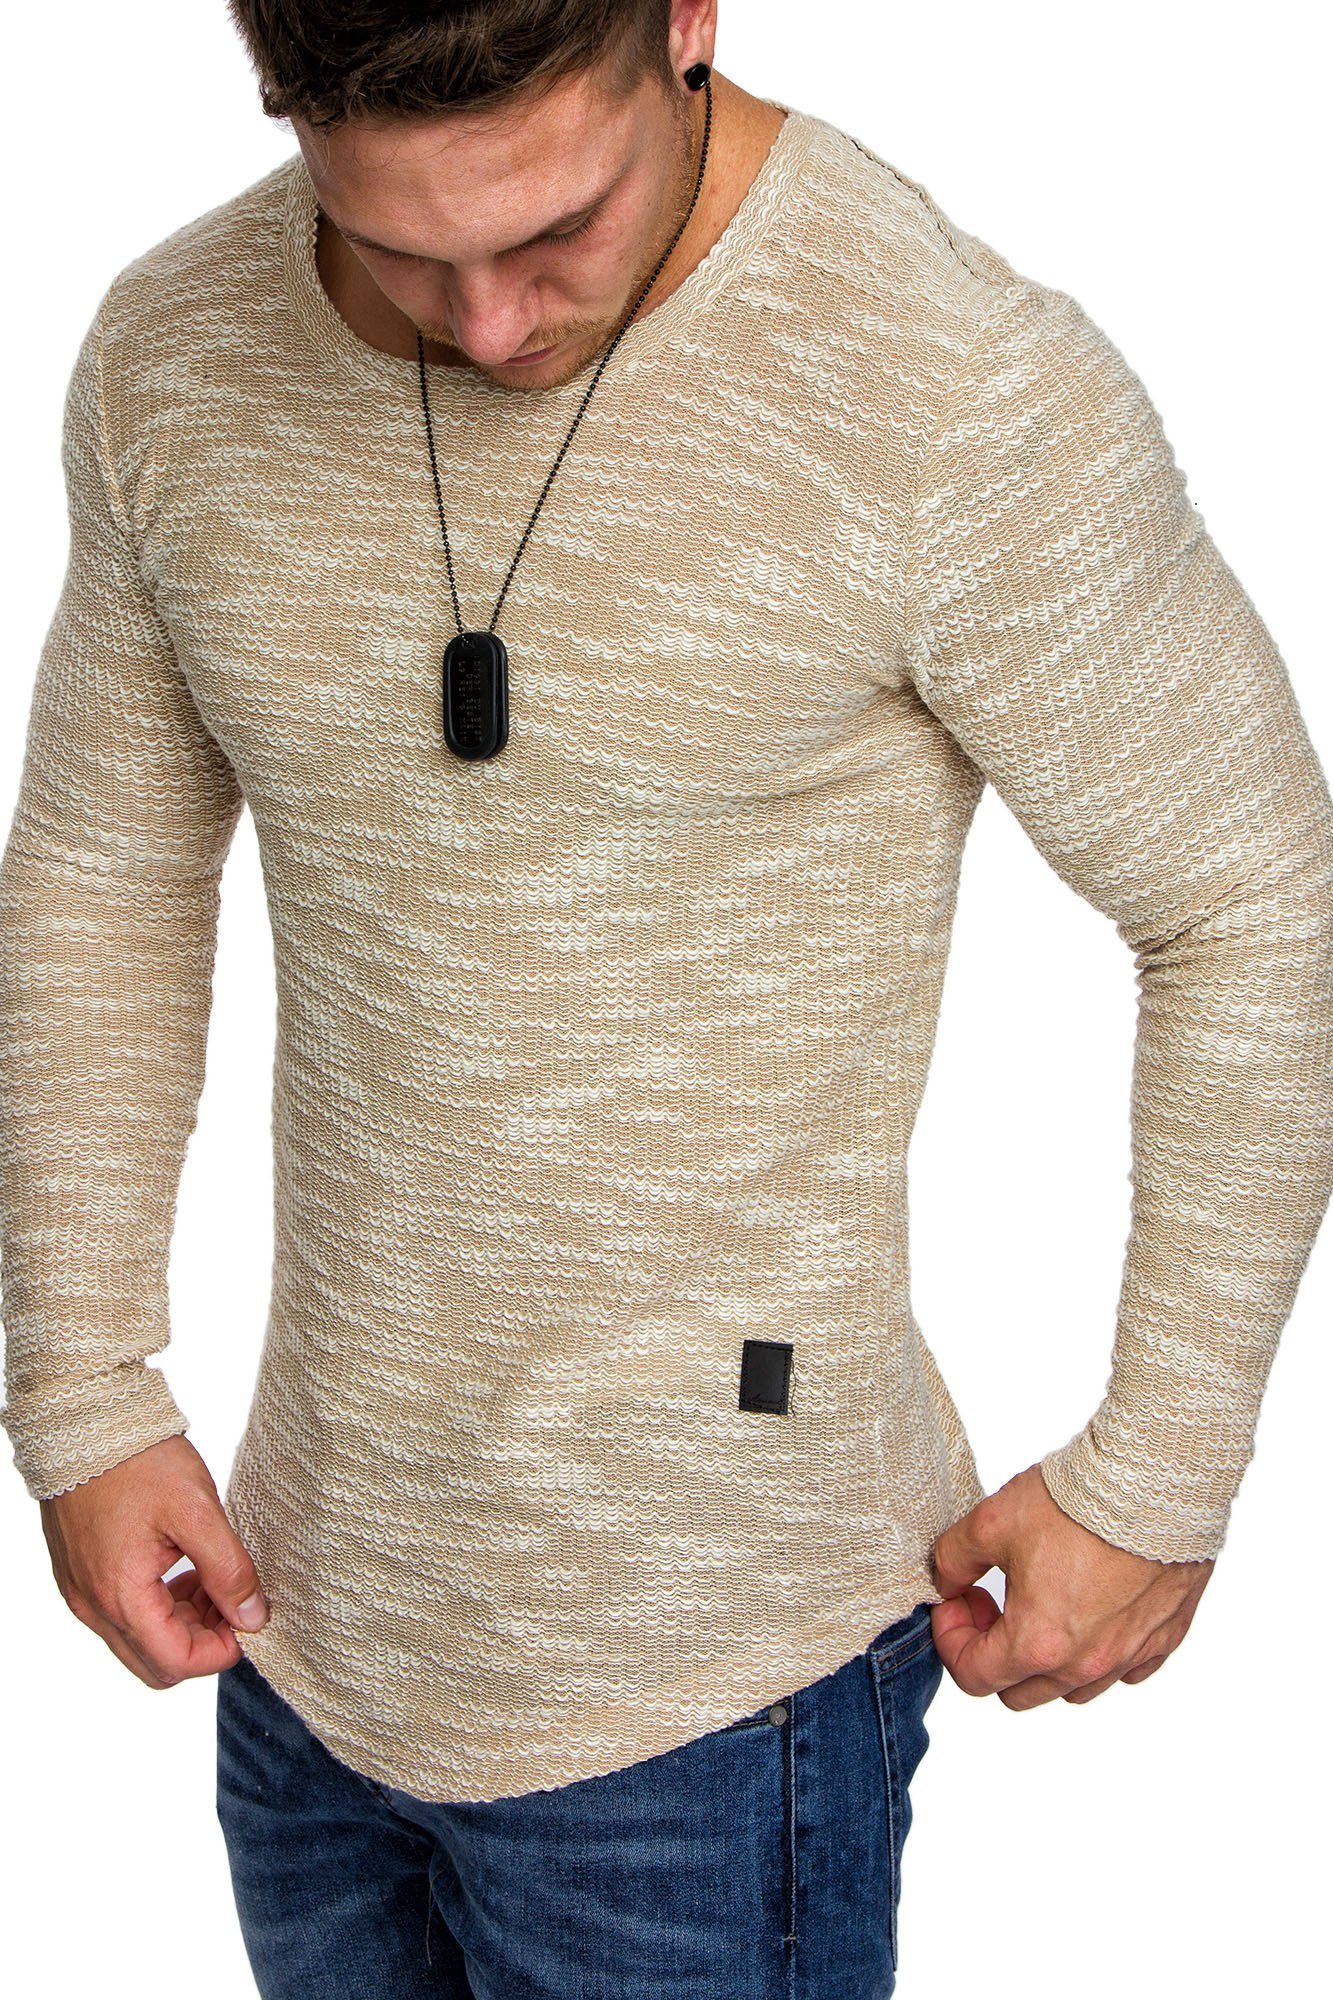 Amaci&Sons Sweatshirt NAMPA Sweatshirt mit Rundhalsausschnitt Herren Pullover Vintage Sweatshirt Hoodie Rundhalsausschnitt Beige